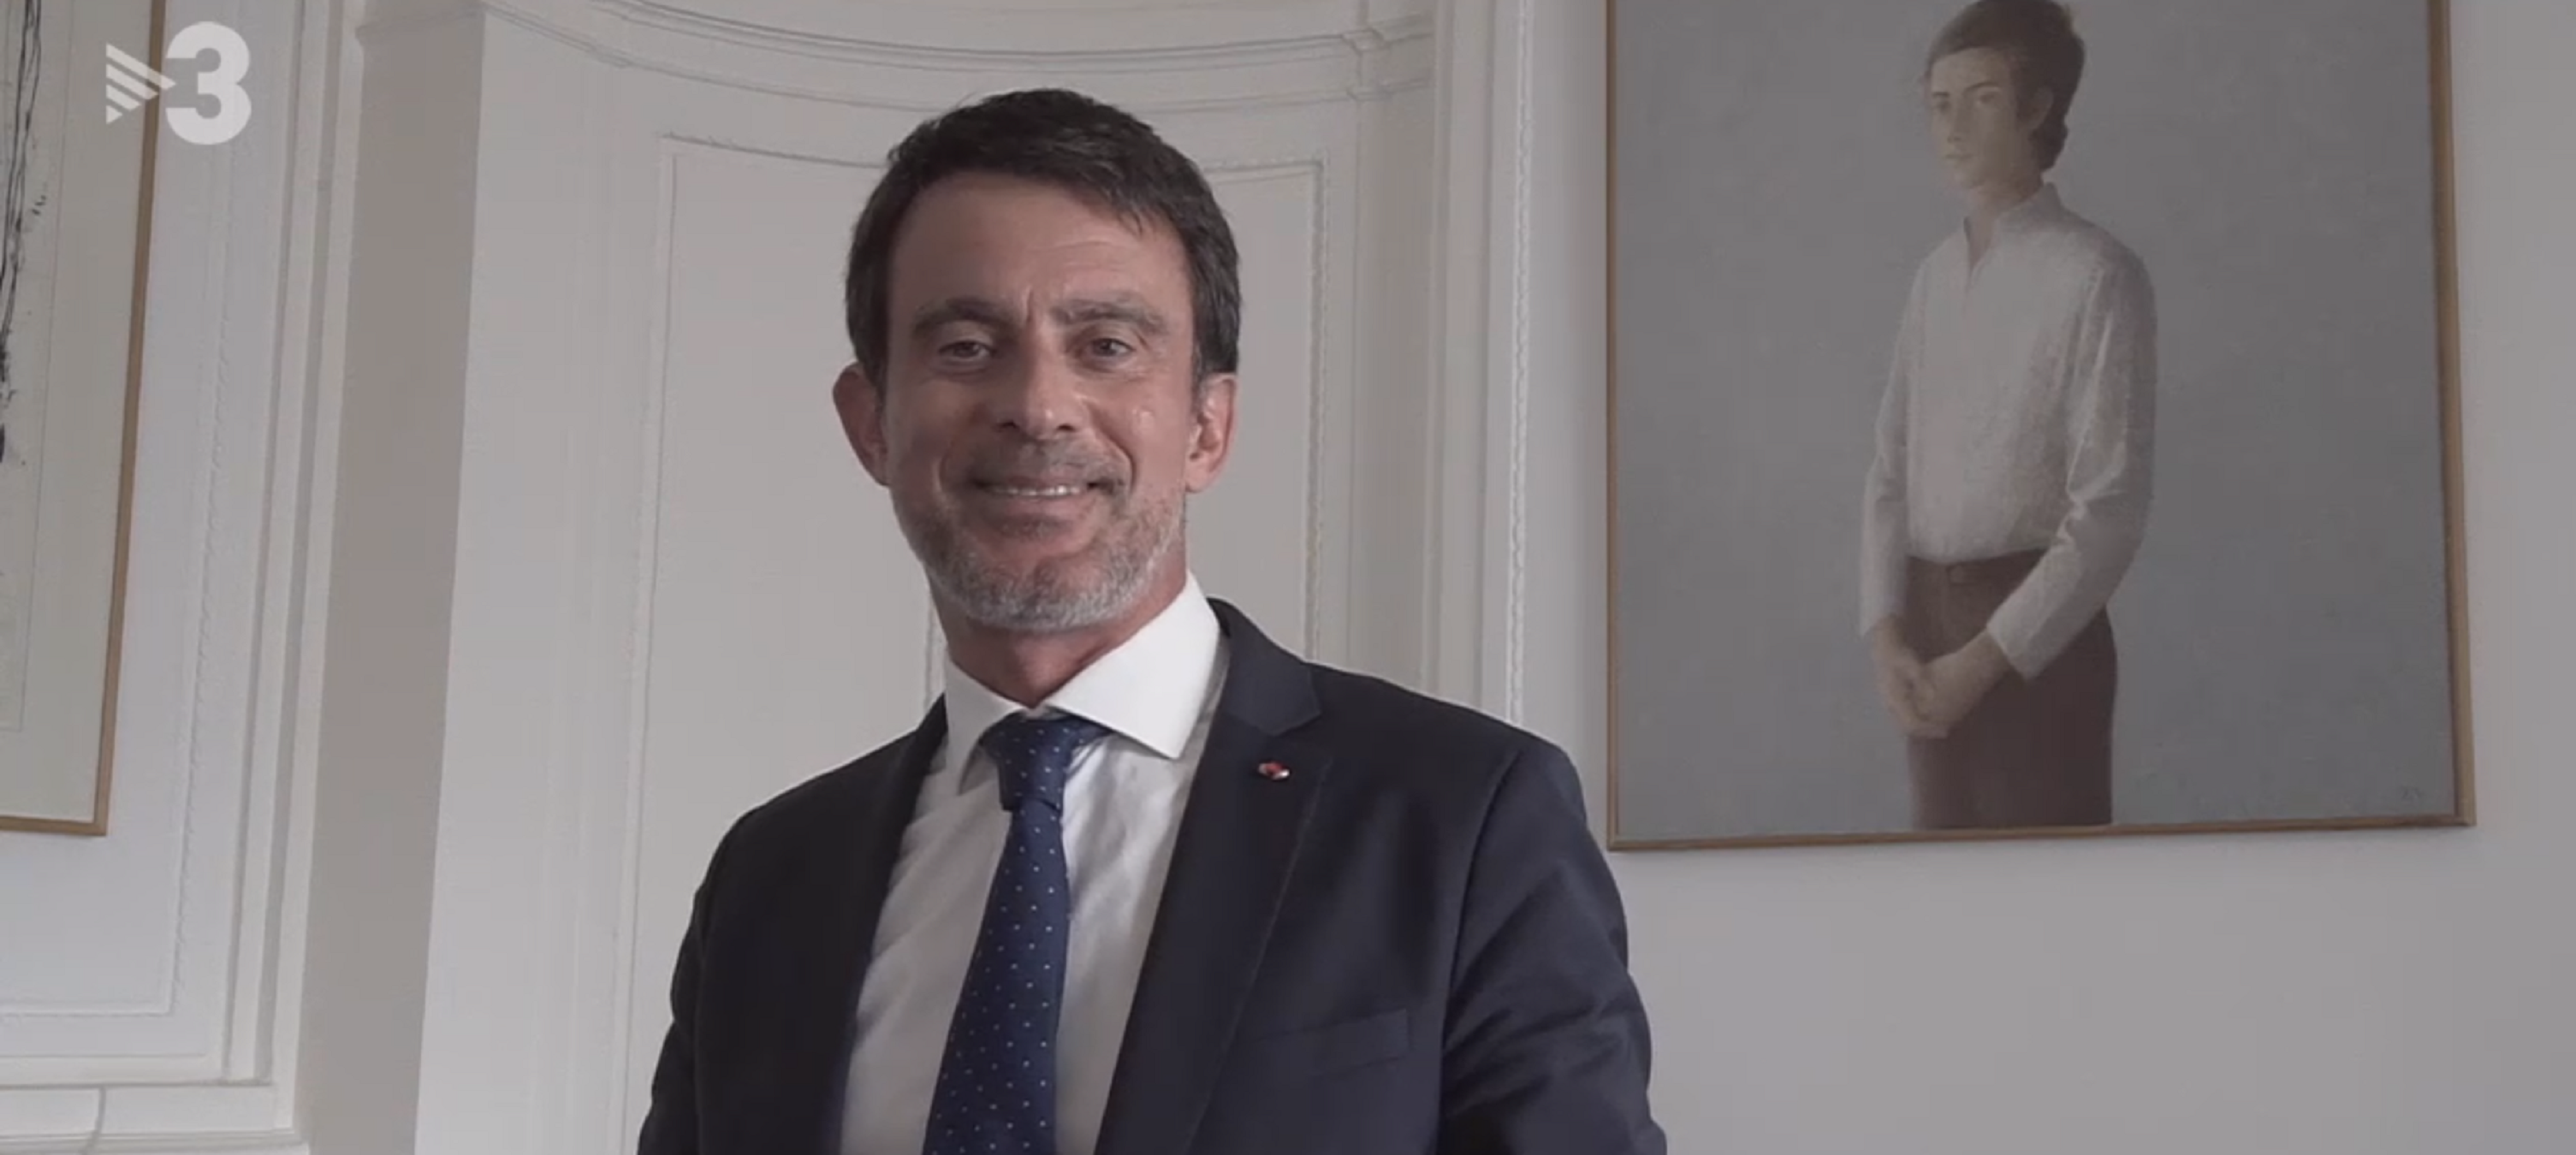 Manuel Valls, el político más repudiado de Francia según 'Les Echos'